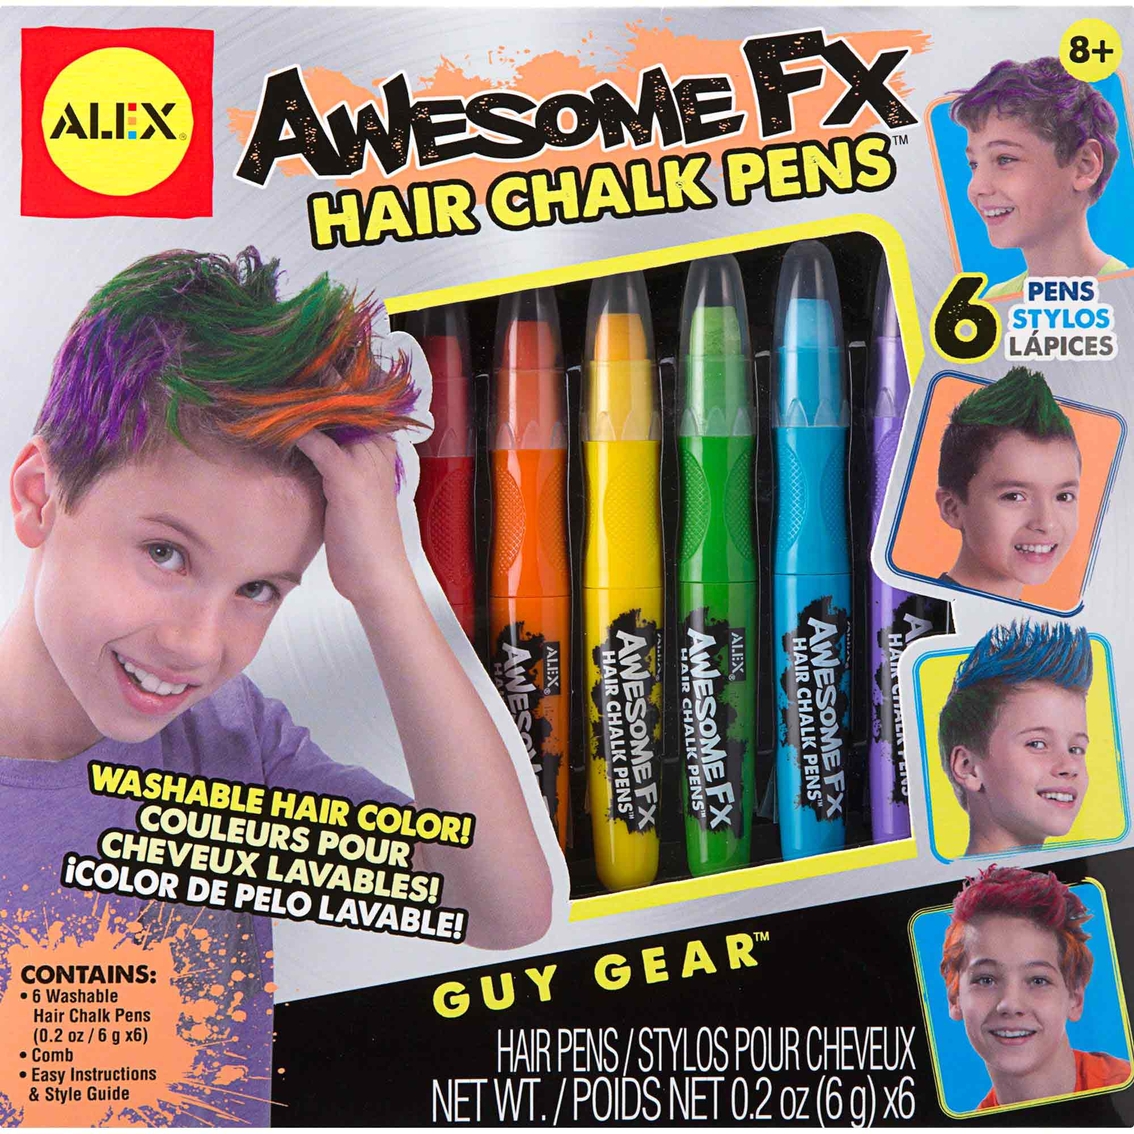 Assorted NEW kids craft kits- tattoo, hair chalk, lip balm